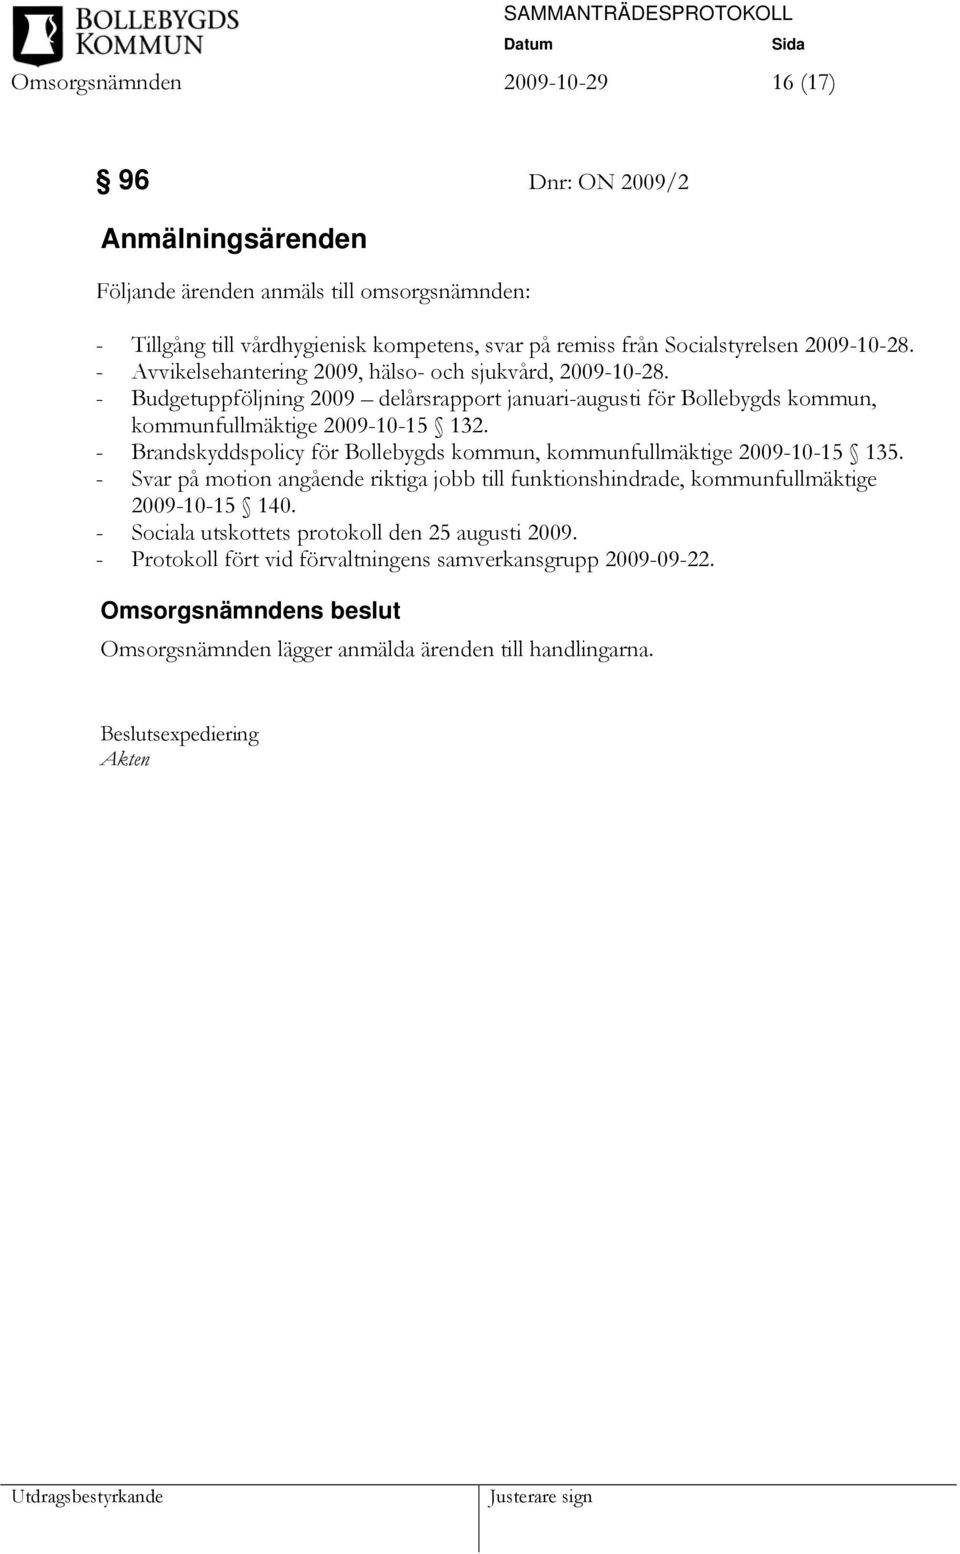 - Budgetuppföljning 2009 delårsrapport januari-augusti för Bollebygds kommun, kommunfullmäktige 2009-10-15 132.